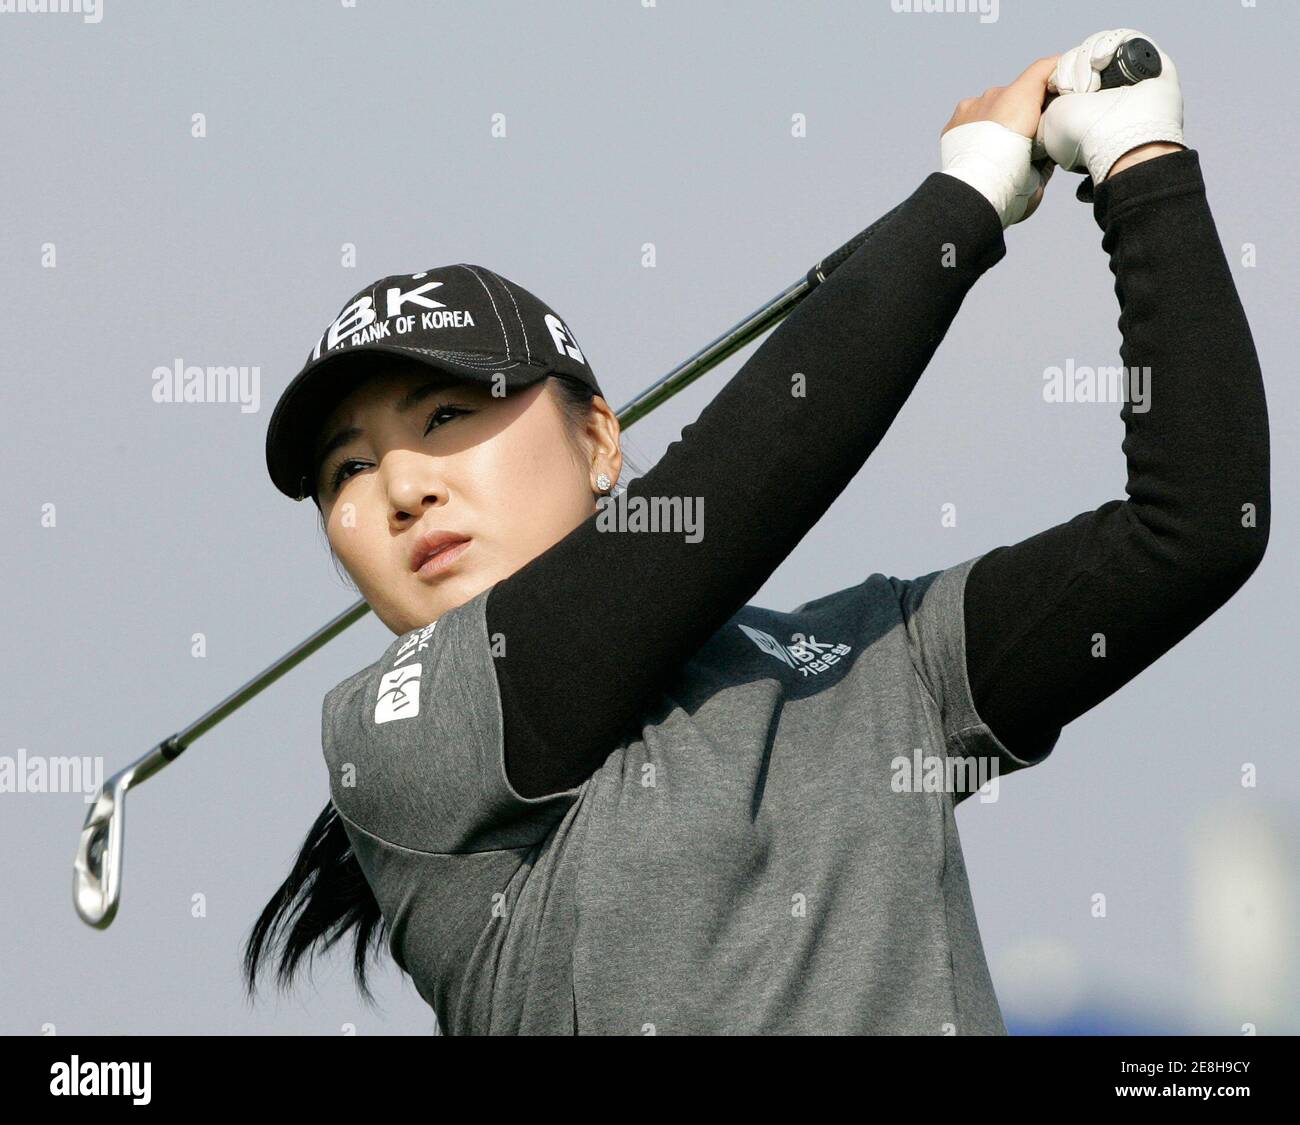 Jang Jeong von Südkorea abschlägt am 8. Loch in der zweiten Runde des Turniers LPGA Hana Bank-Kolon Championship Golf auf Sky72 Golf Club Ocean Course in Incheon, westlich von Seoul, 1. November 2008.  REUTERS/Jo Yong-Hak (Südkorea) Stockfoto